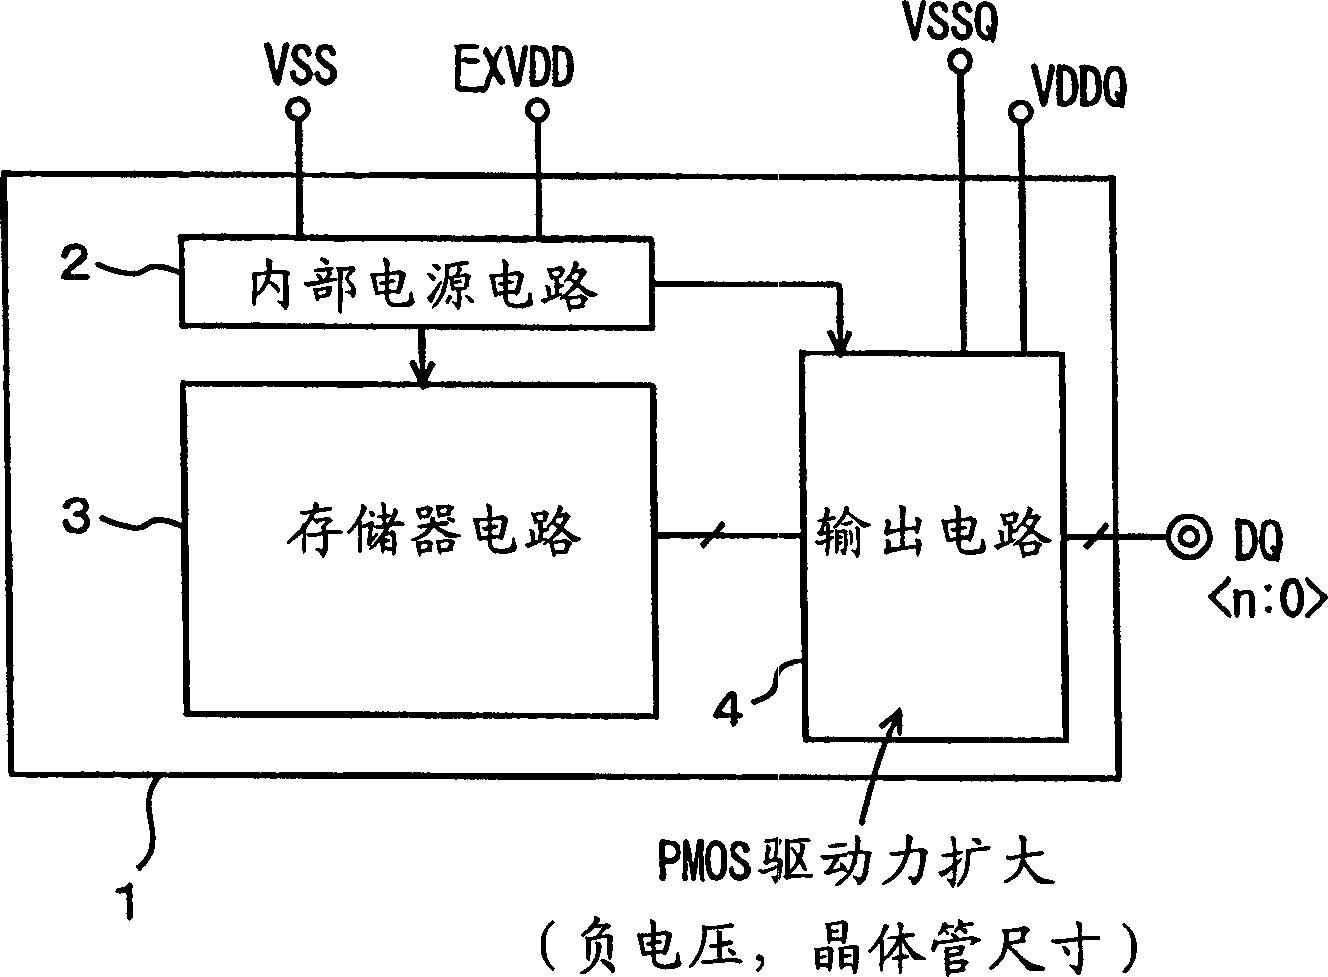 Output circuit